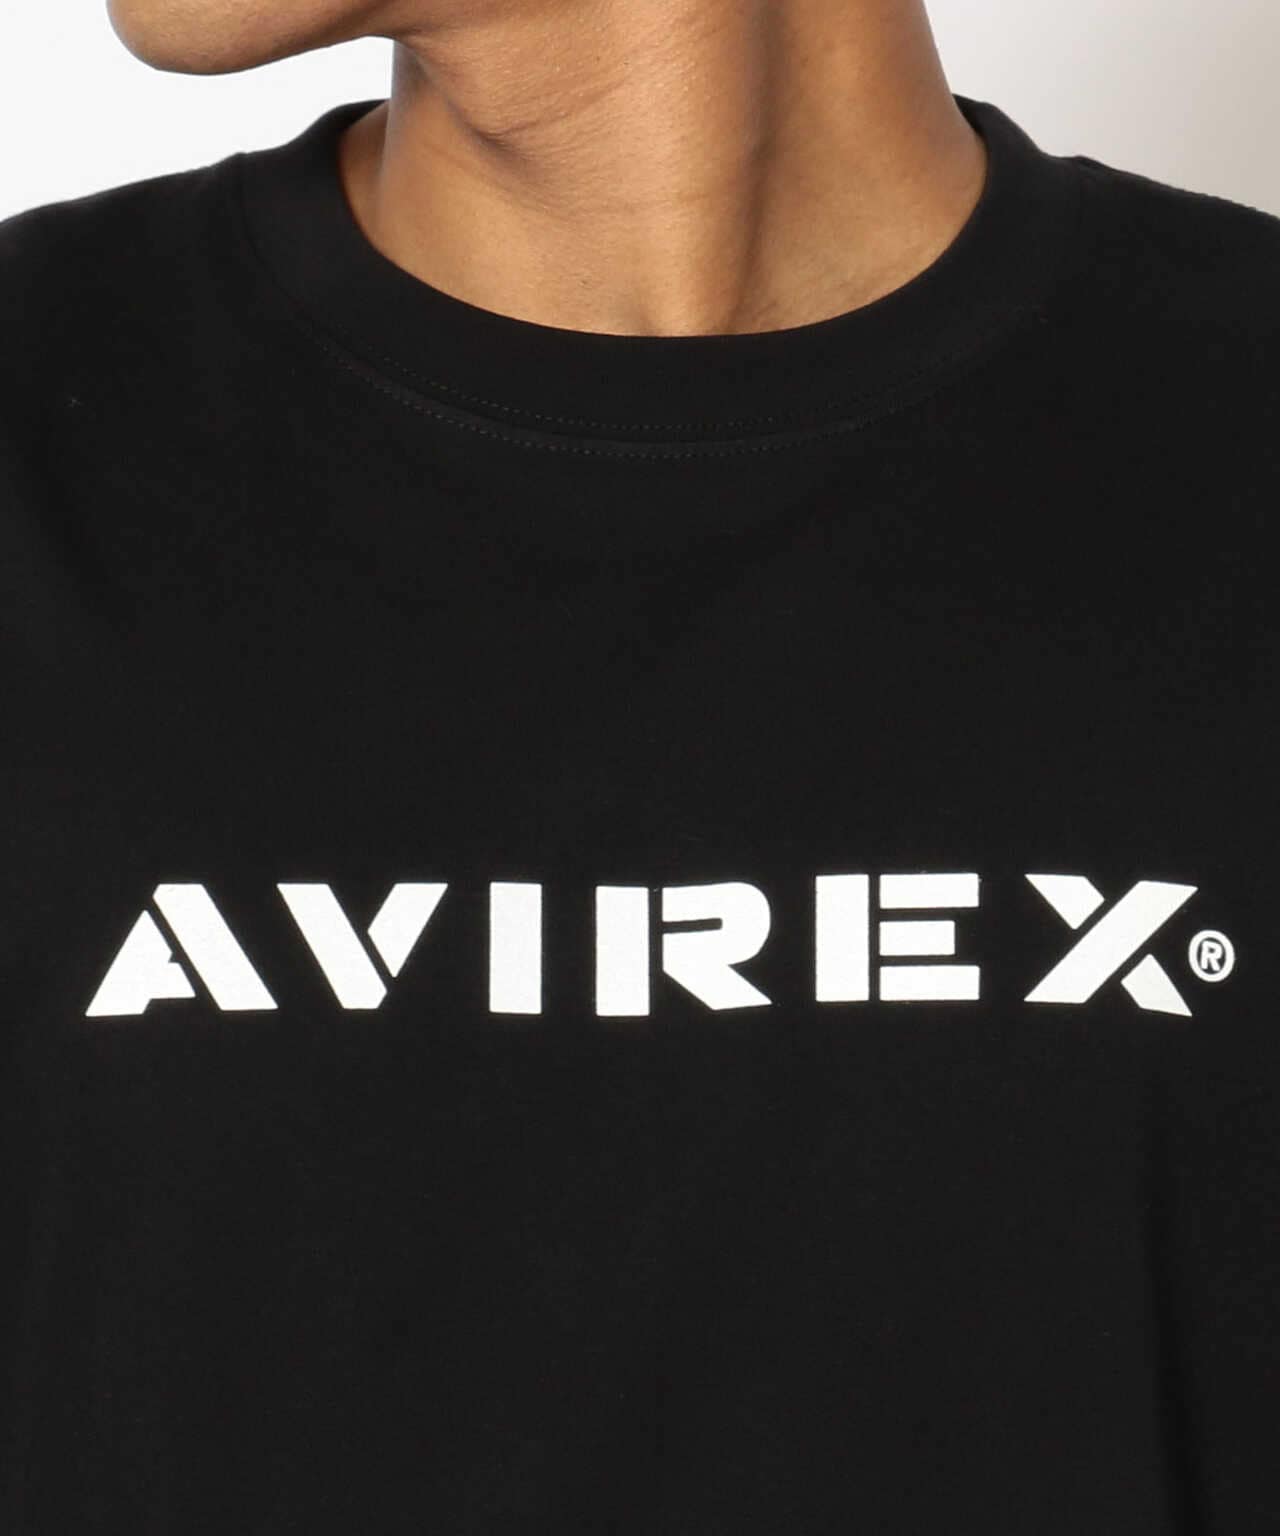 【MLB×AVIREX】ホワイトソックス Tシャツ/WHITE SOX T-SHIRT